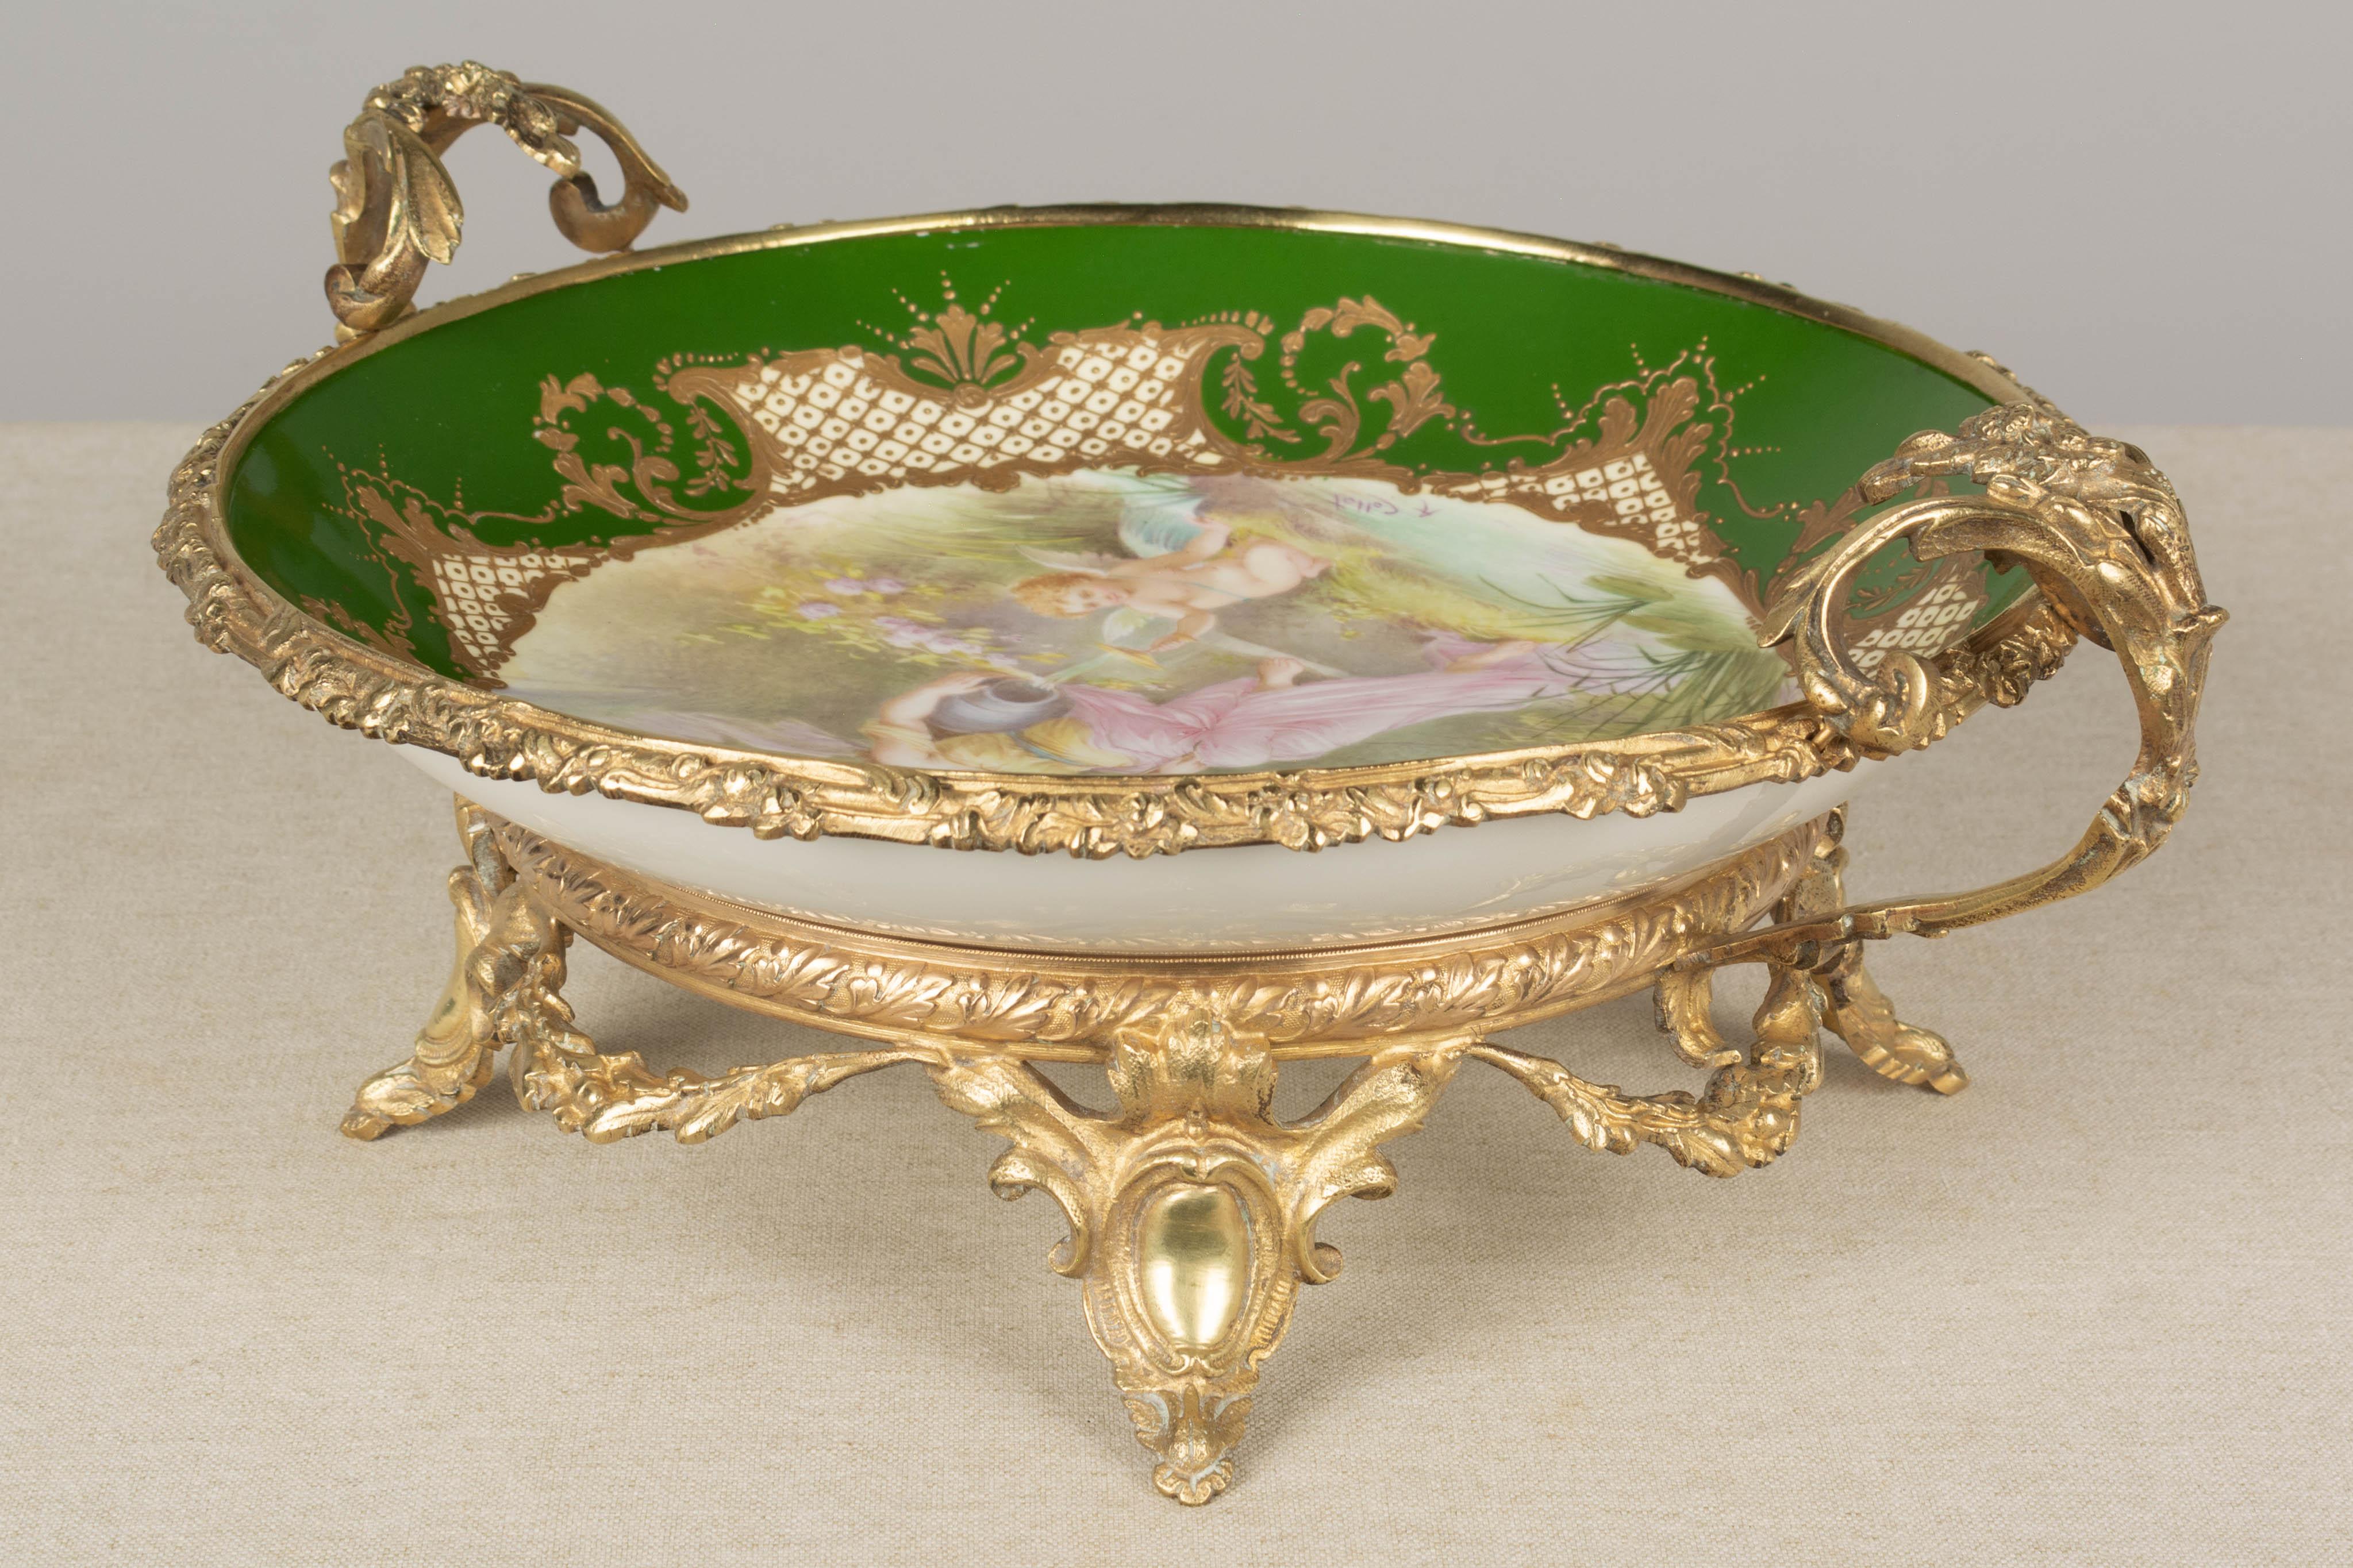 Cast 19th Century French Ormolu Sèvres Porcelain Centerpiece Bowl For Sale